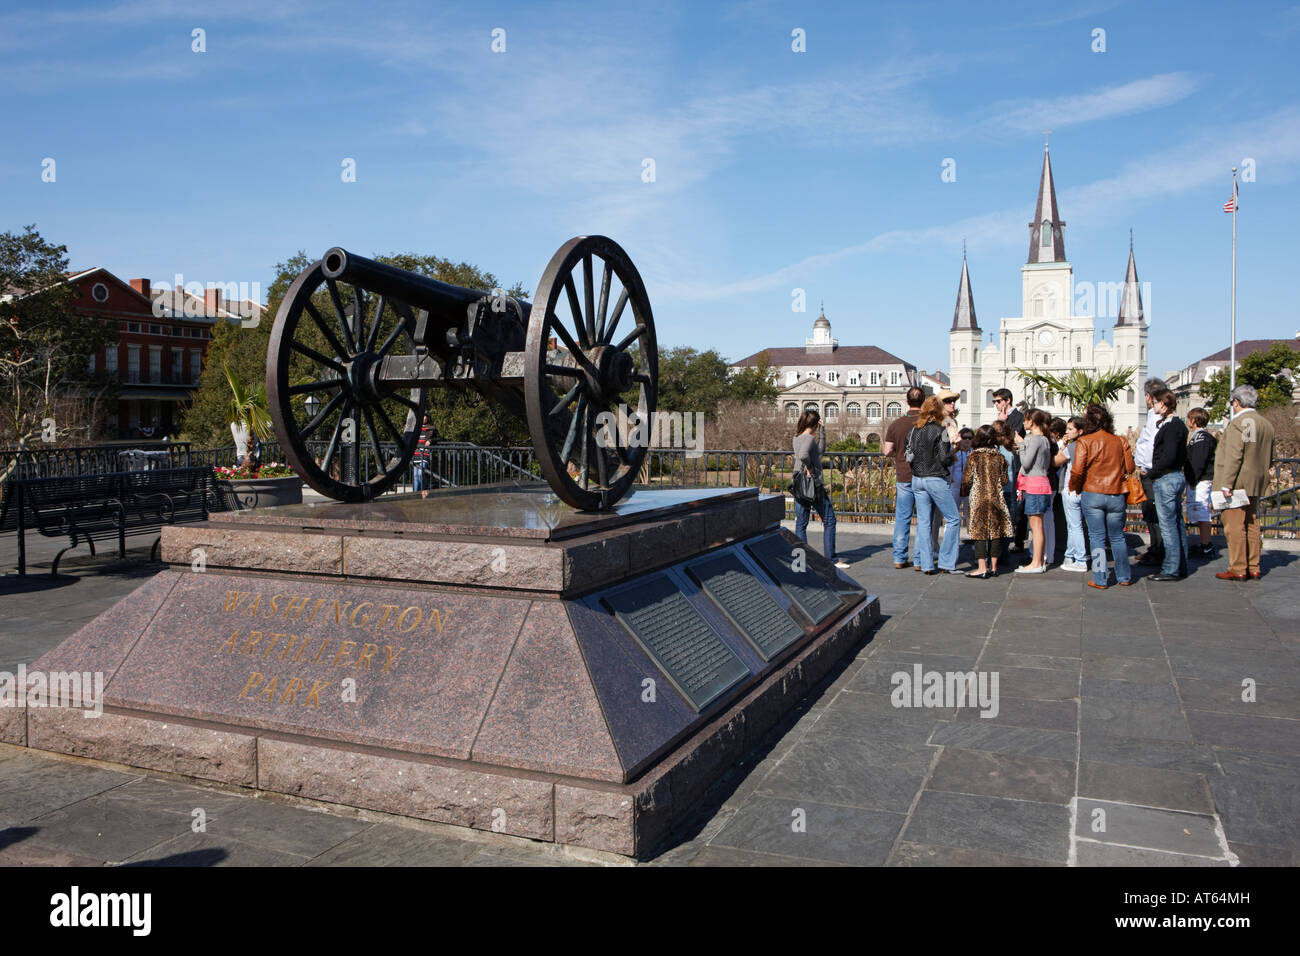 Groupe de touristes dans le parc de l'Artillerie de Washington. La Nouvelle-Orléans, Louisiane, Etats-Unis. Banque D'Images